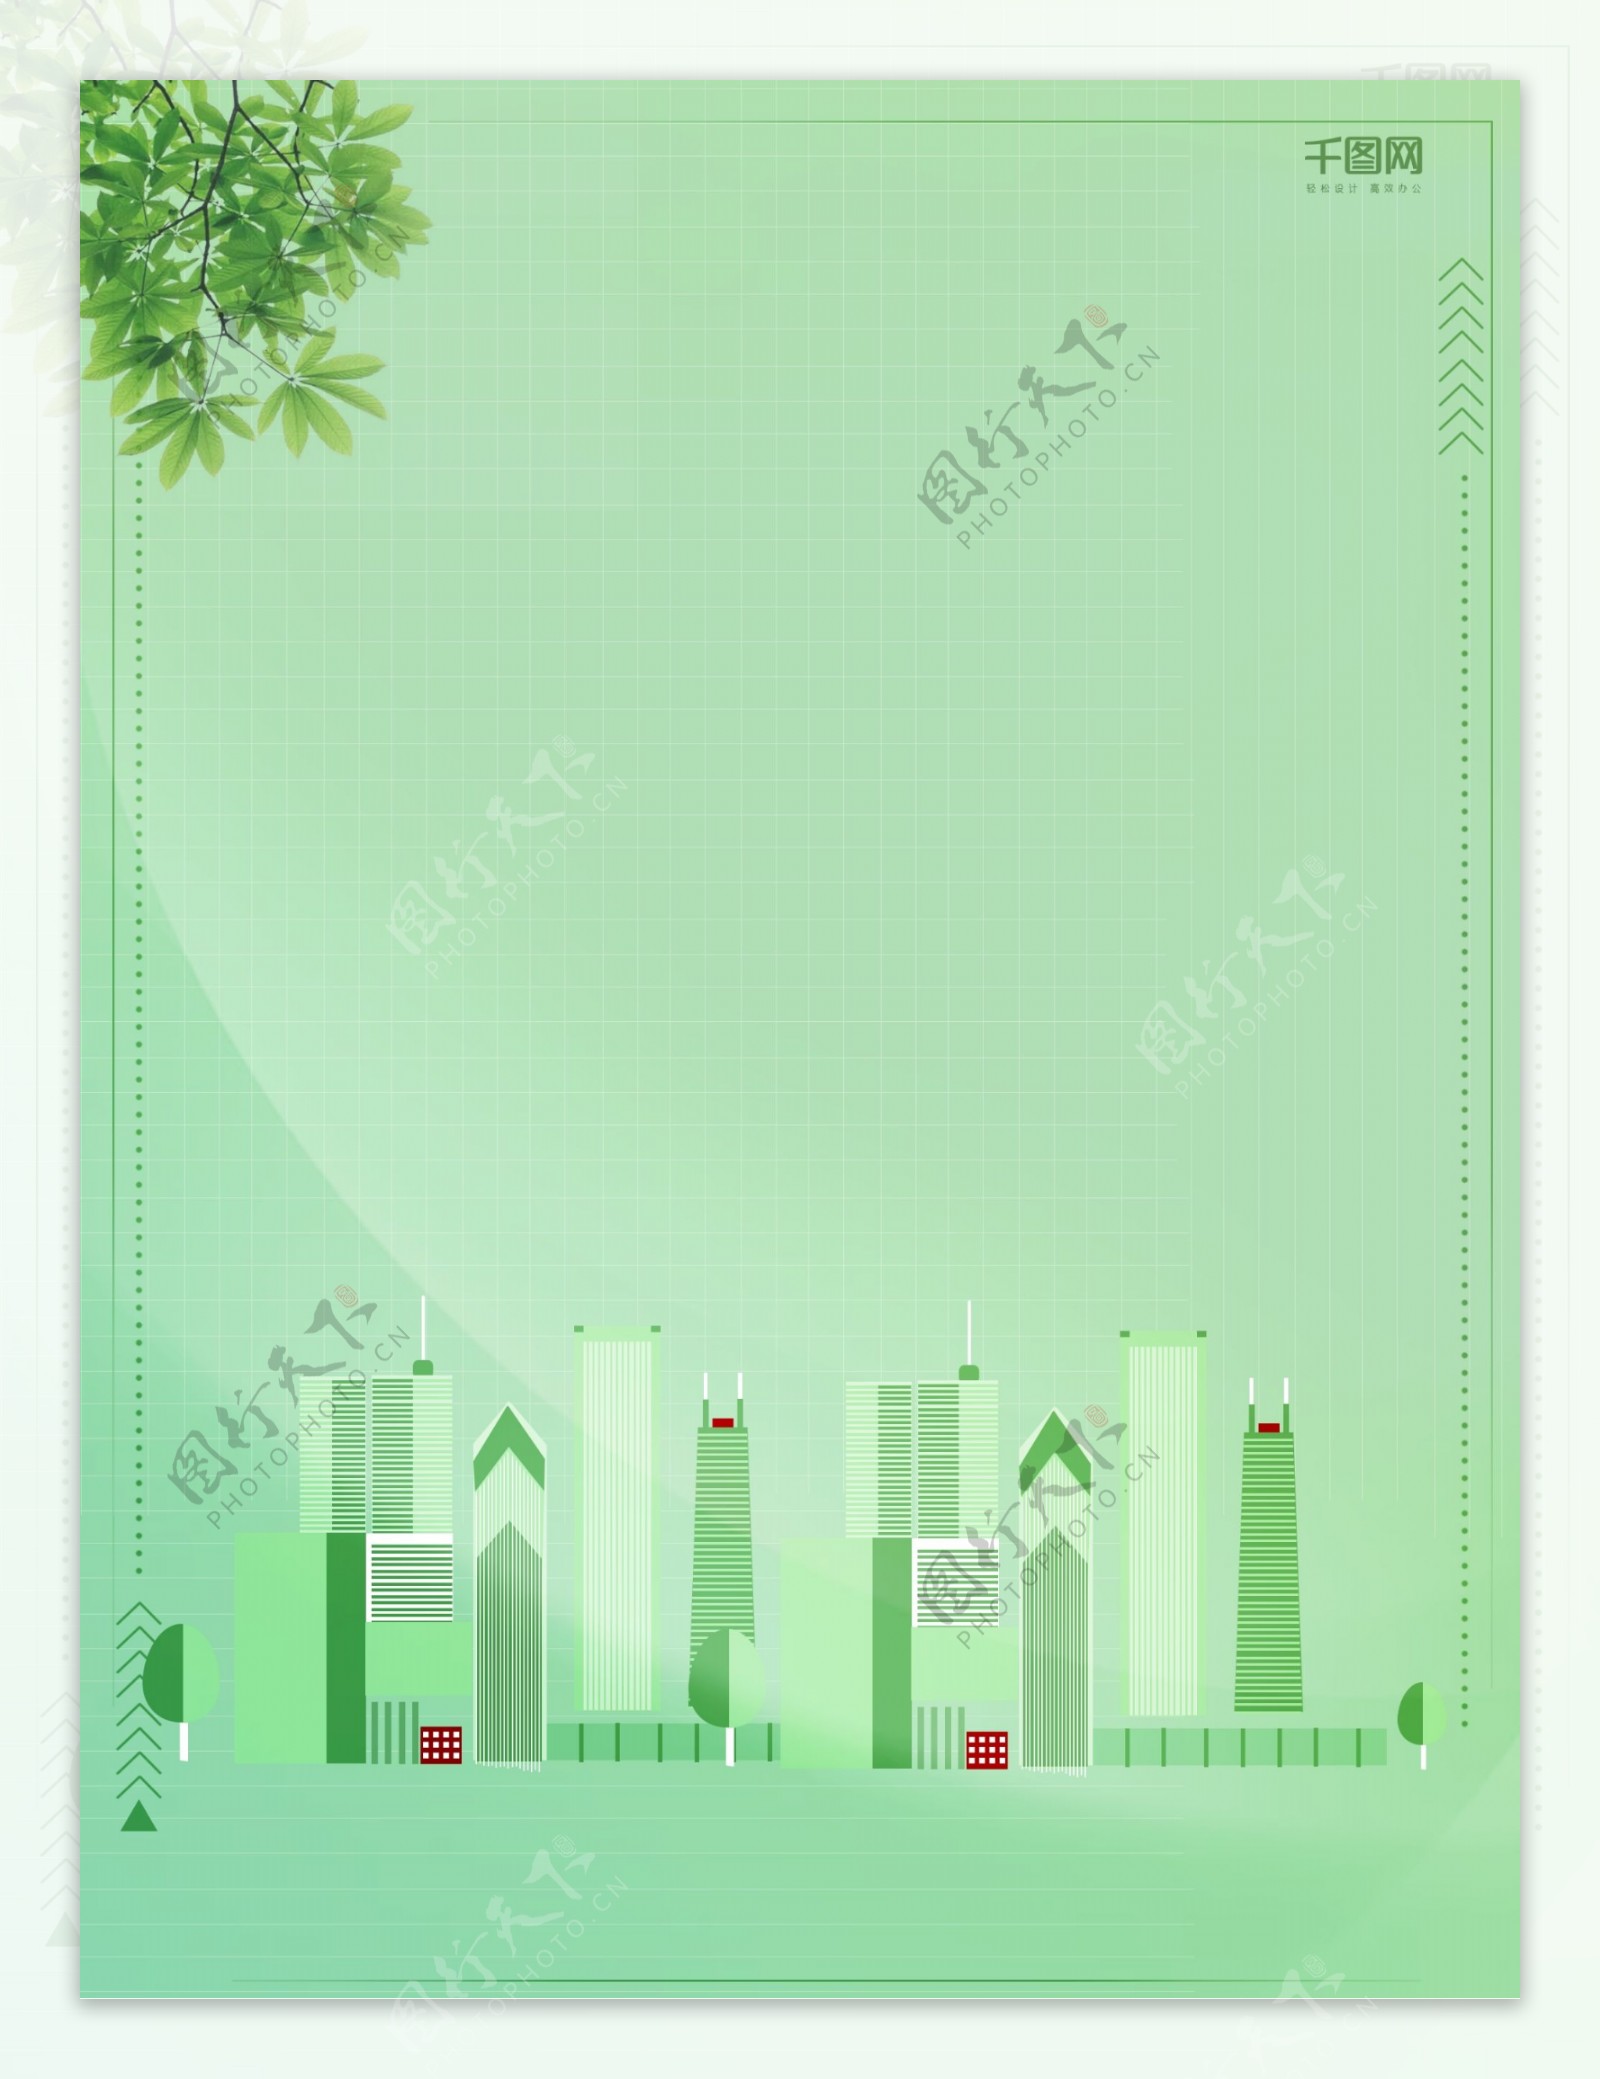 绿色环保文明城市背景素材